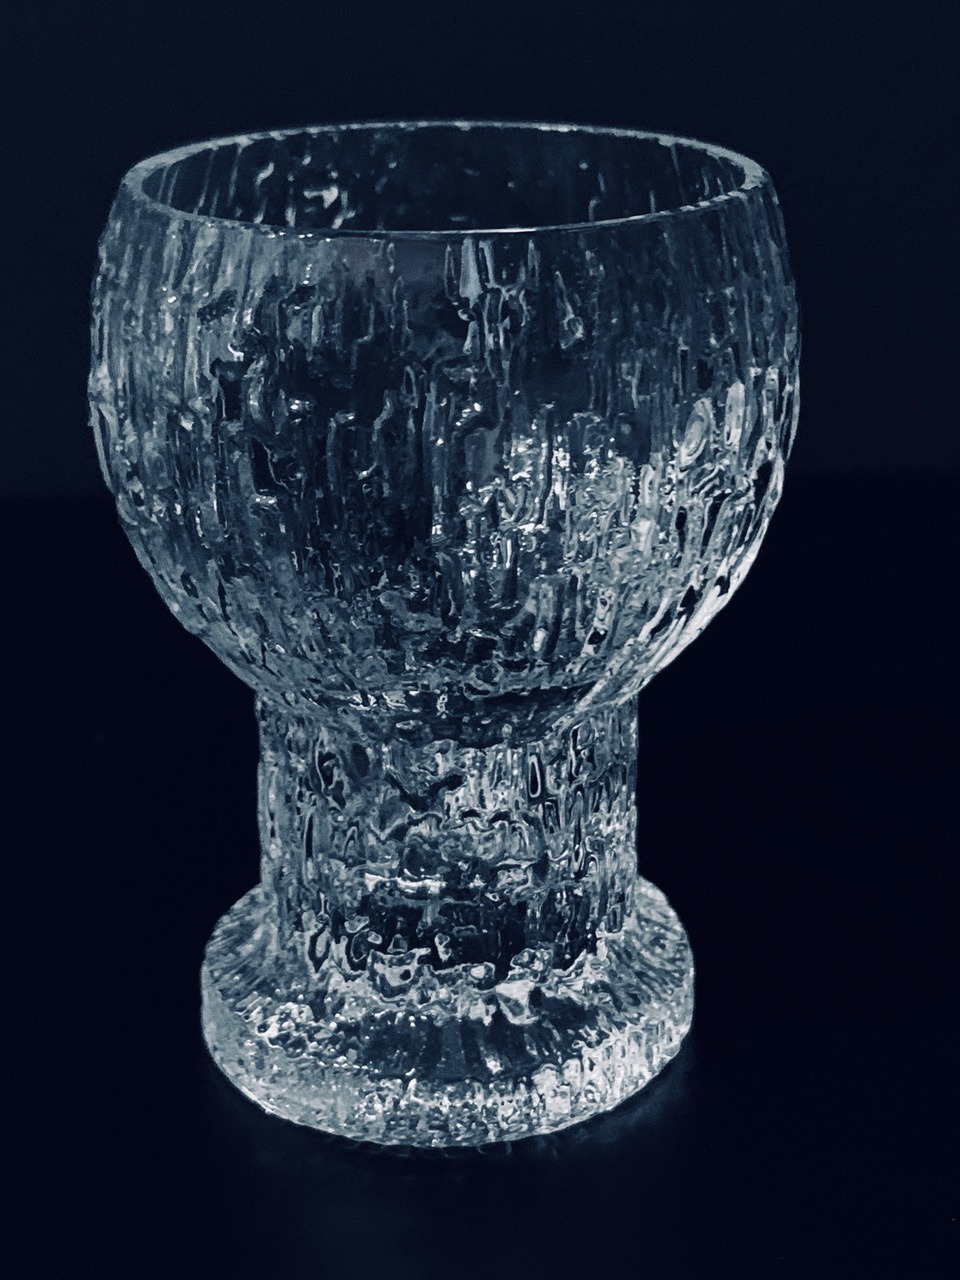 Immagine del set di tre bicchierini Kekkerit di Iittala Timo Sarpaneva offerto in questa pubblicità.